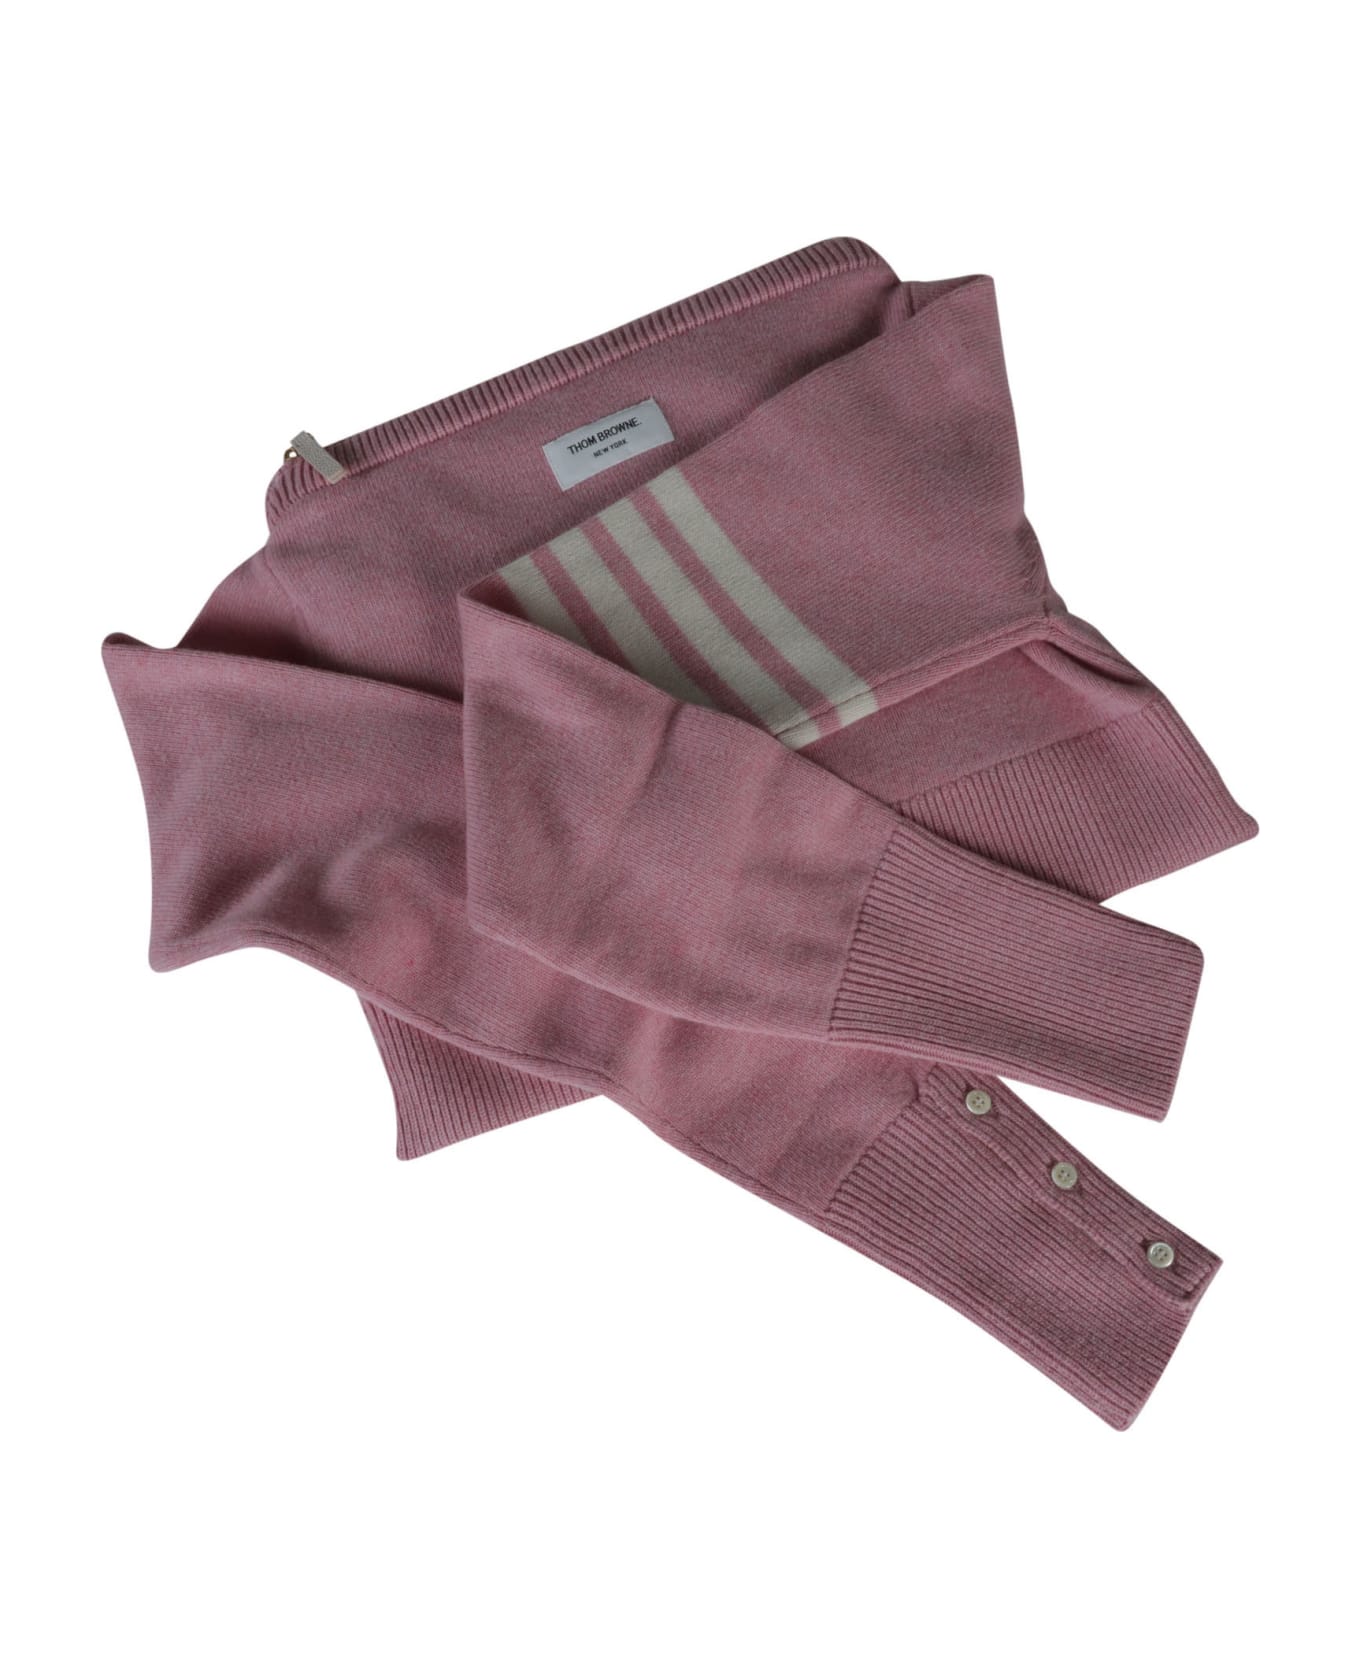 Thom Browne Sweater Shoulder Bag - Light Pink